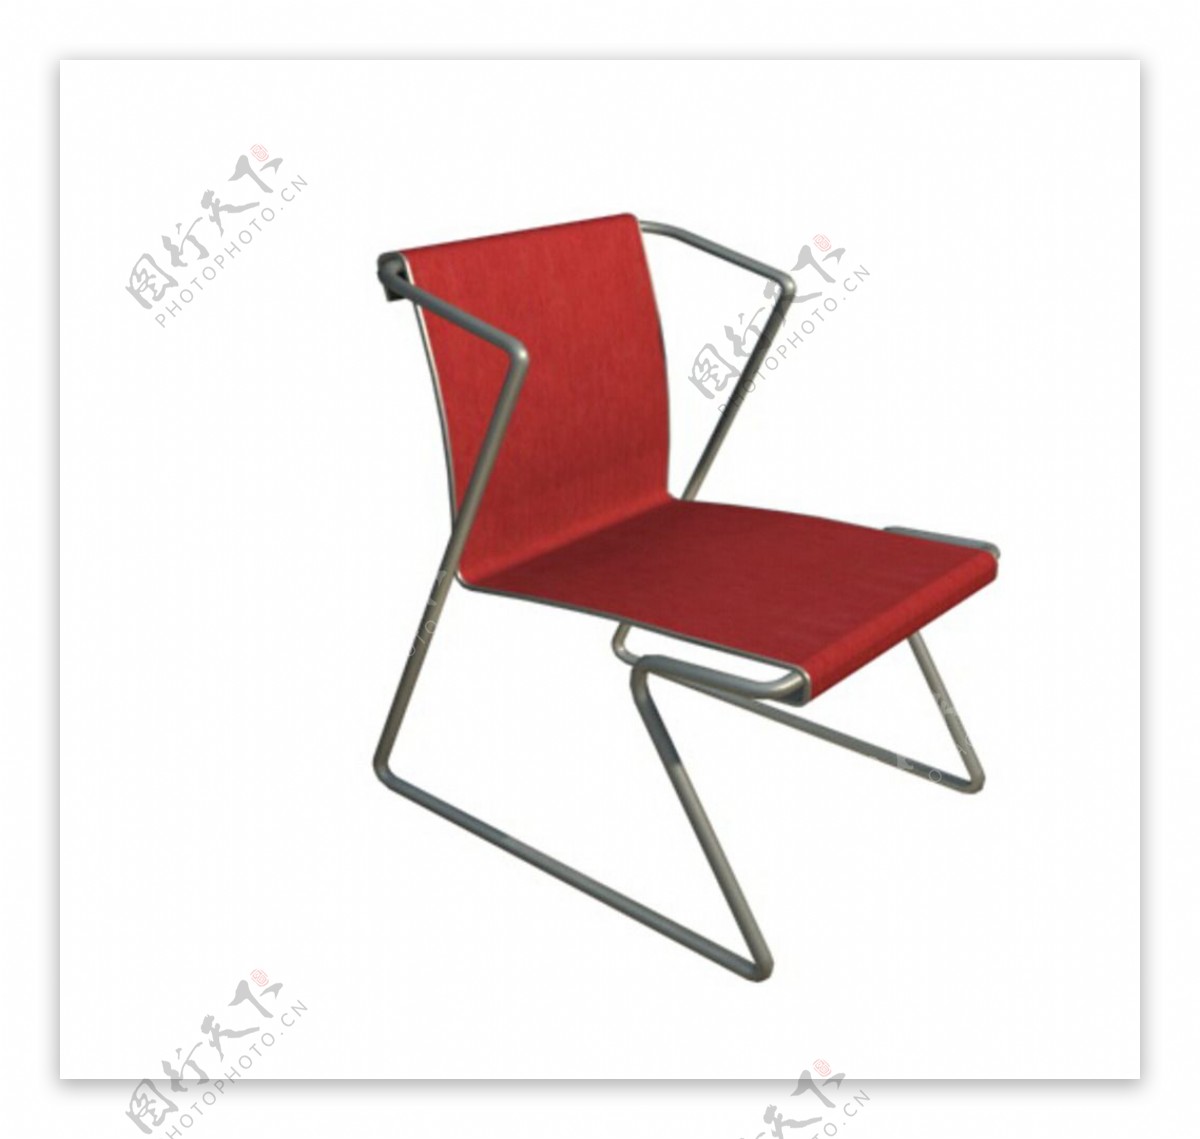 椅子单个模型图片